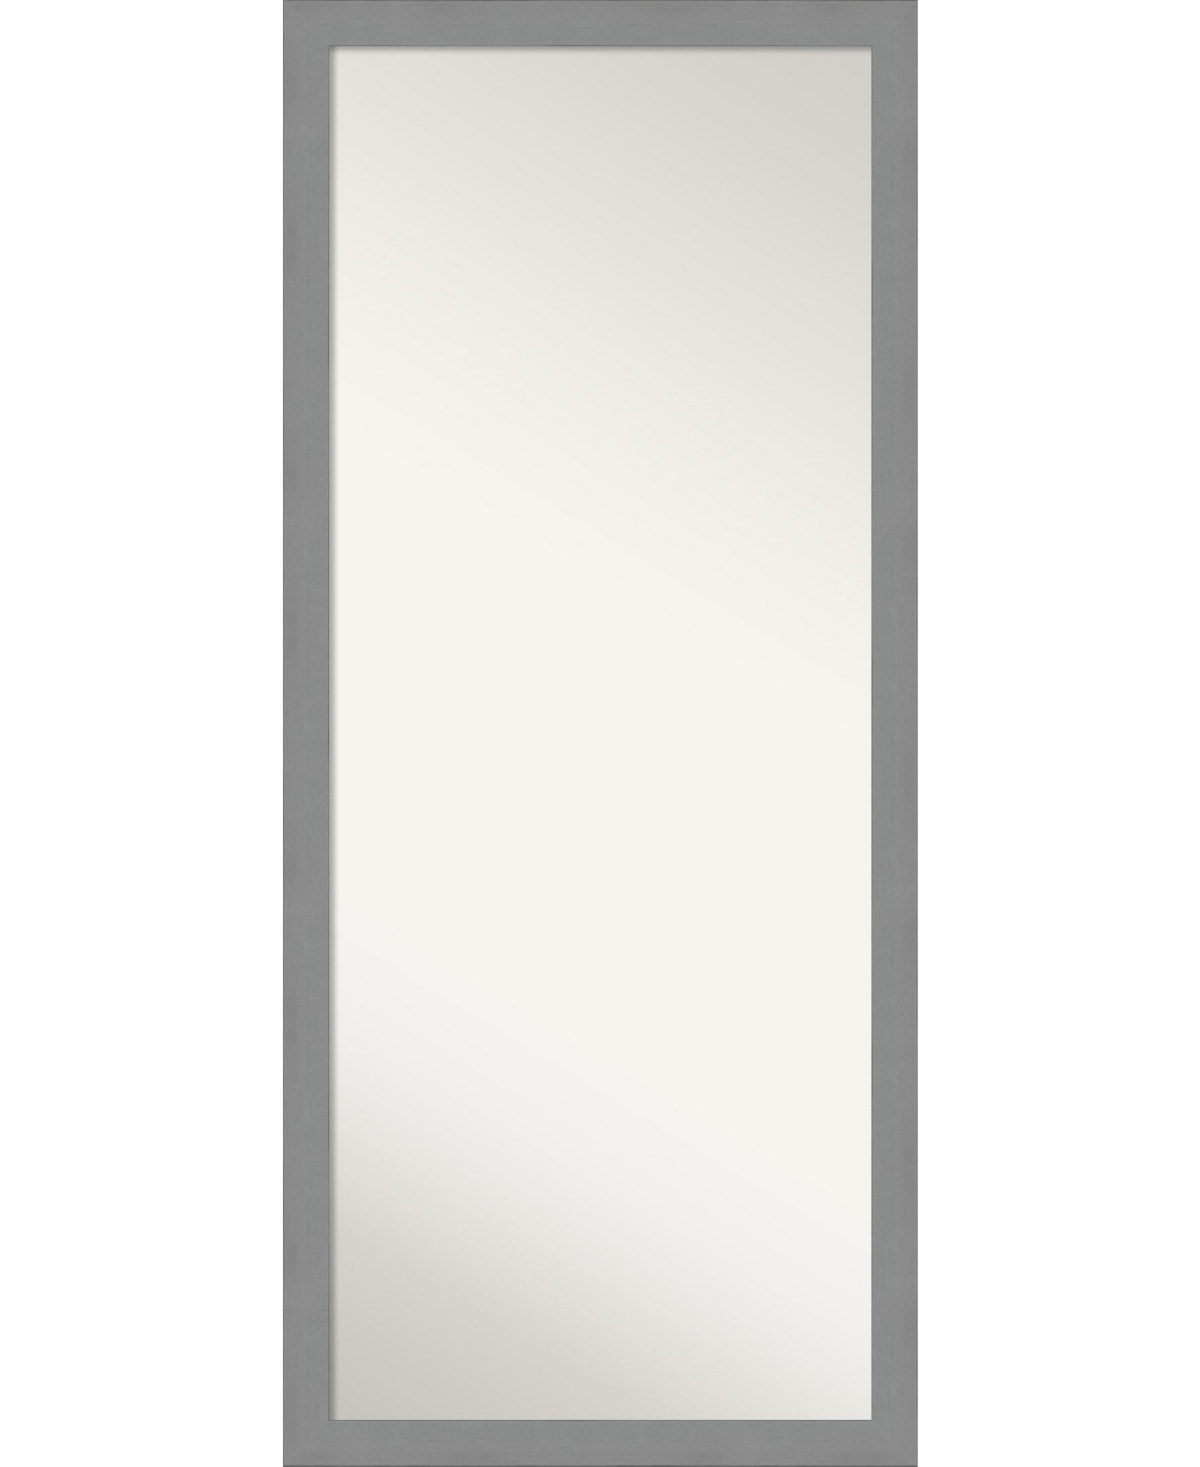 Brushed Framed Floor/Leaner Full Length Mirror, 27.5" x 63.50" - Silver